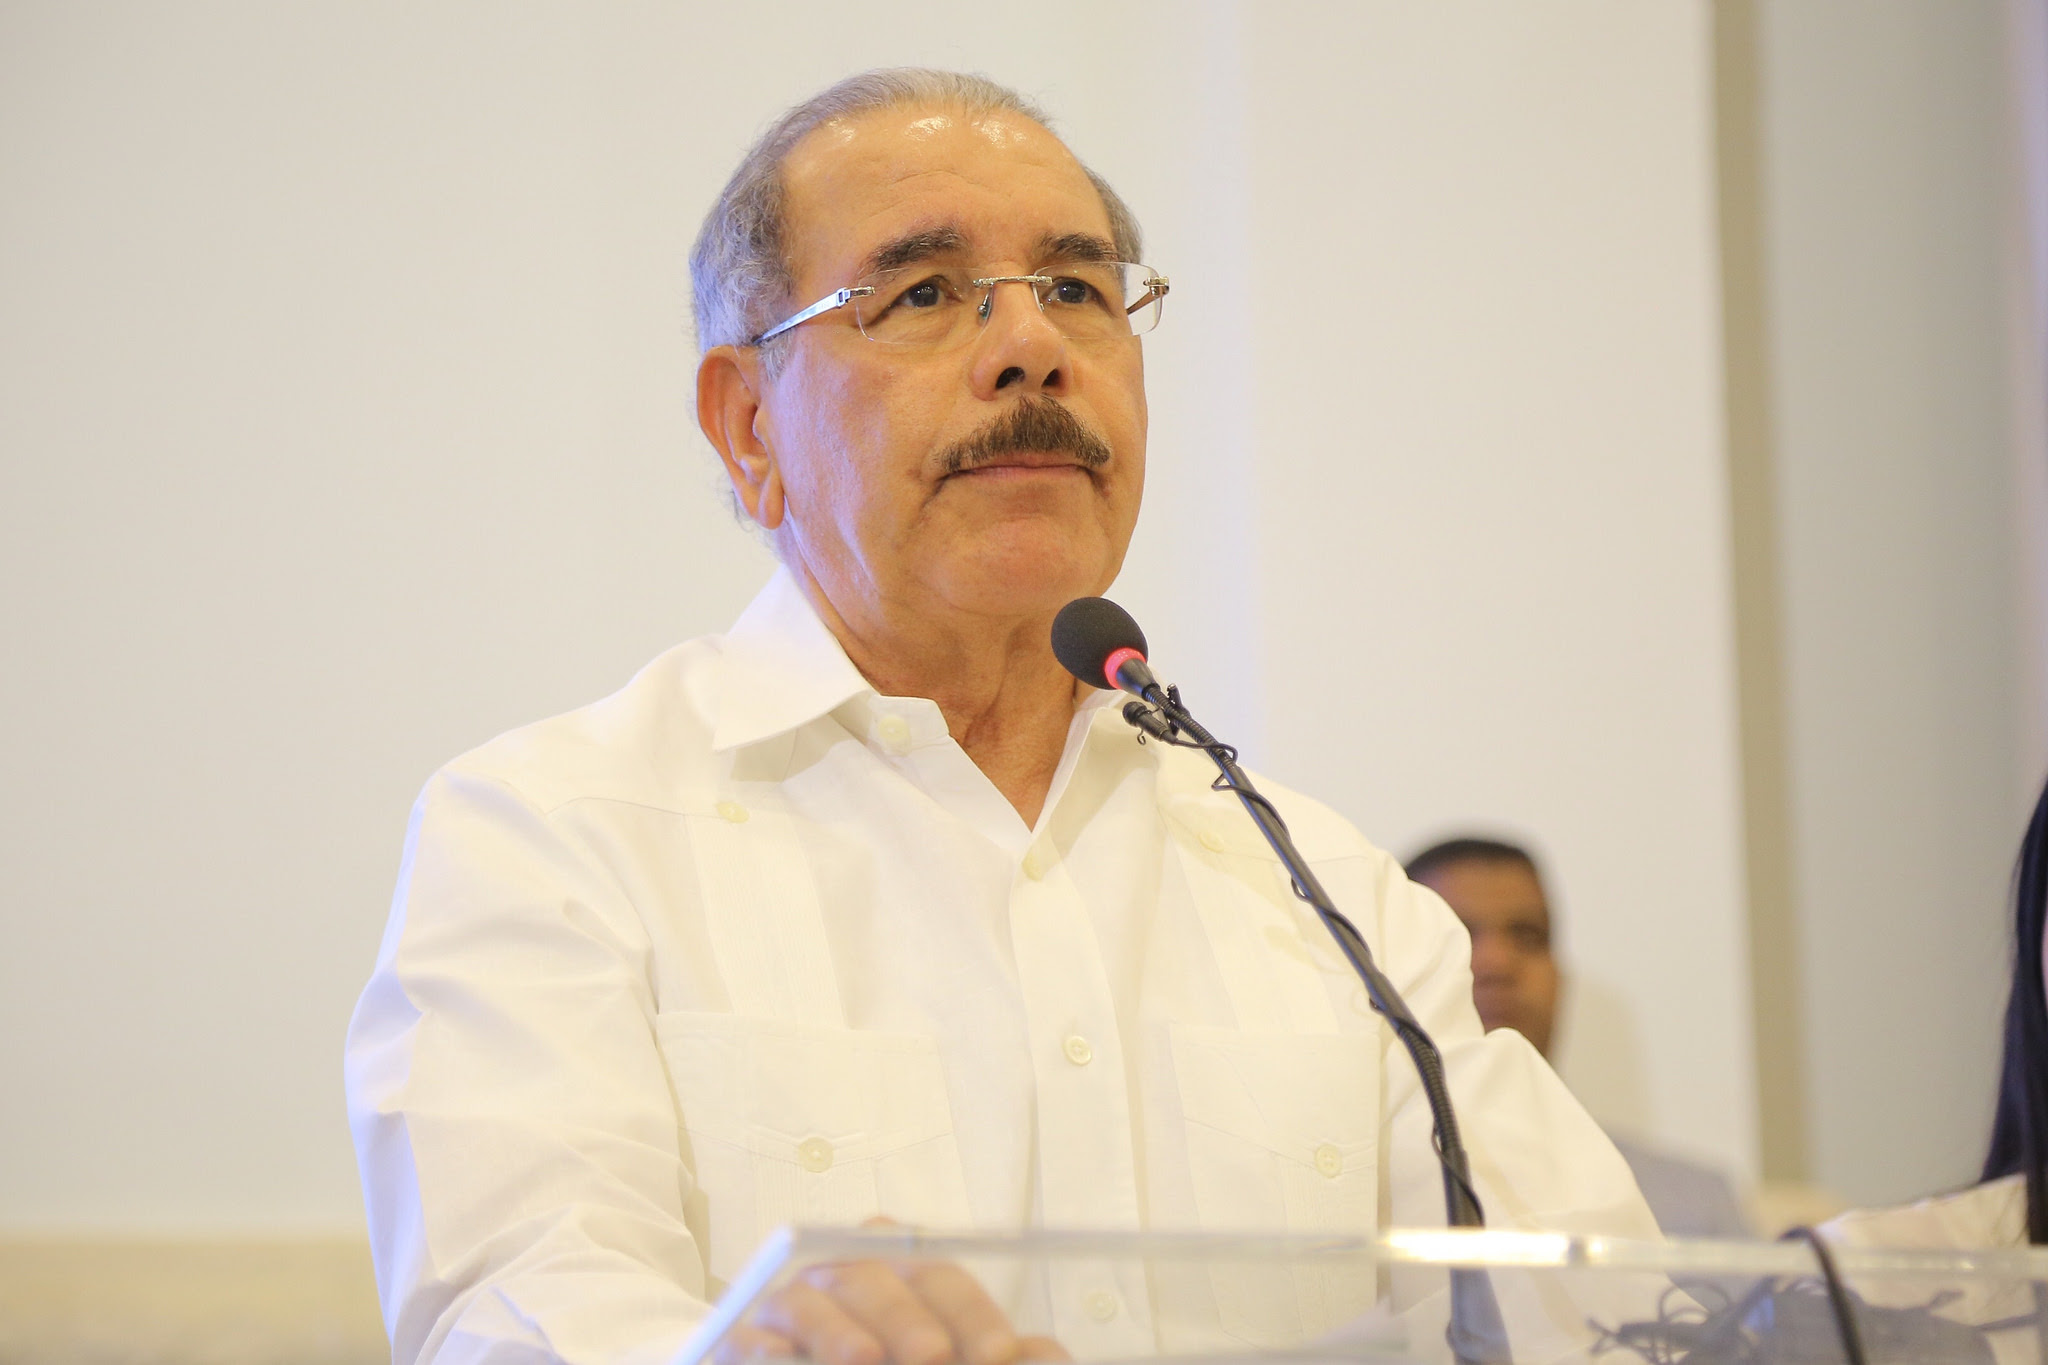 EL presidente Danilo Medina resalta el modelo económico del país